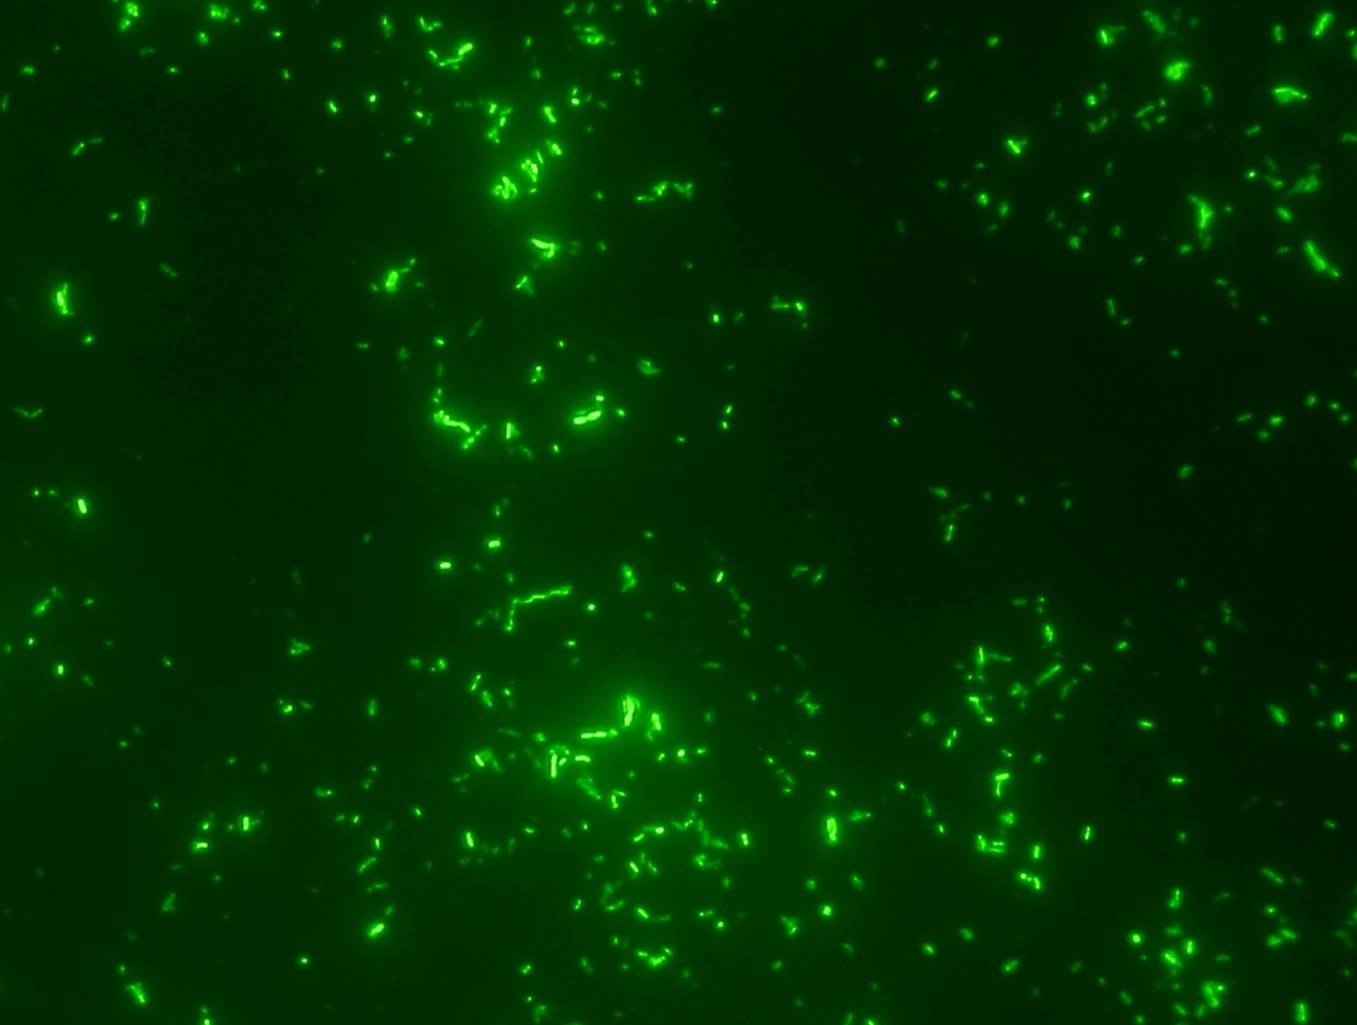 Mikroskopische Aufnahme von Bakterienplankton, das nach Anfärbung mit Fluoreszenzfarbstoff leuchtend grün sichtbar wird.